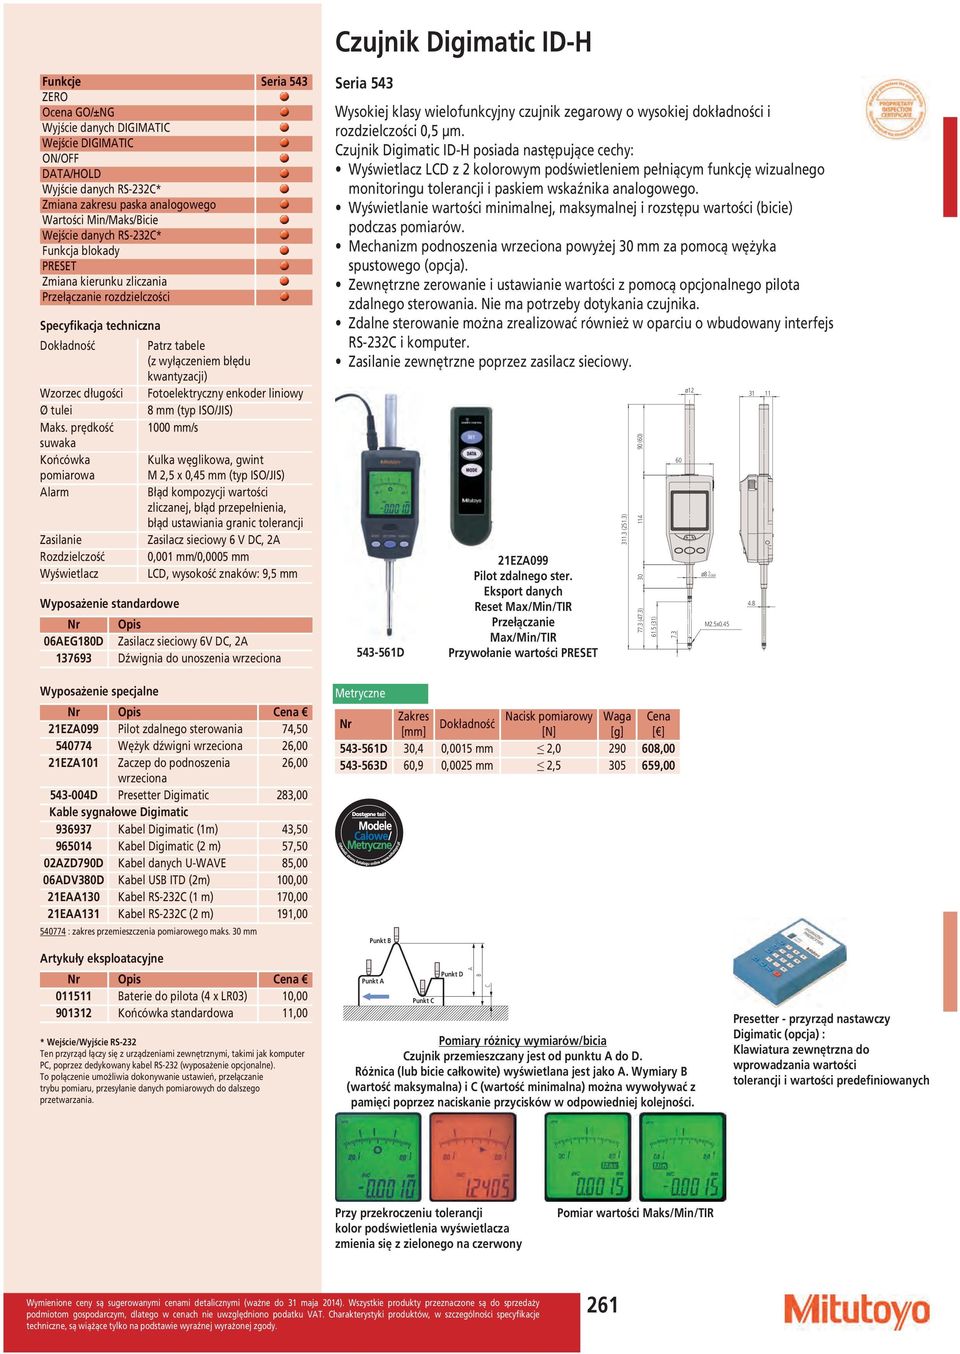 prędkość suwaka Końcówka pomiarowa larm Zasilanie Rozdzielczość Wyświetlacz Wyposażenie standardowe Patrz tabele (z wyłączeniem błędu kwantyzacji) Fotoelektryczny enkoder liniowy 8 (typ ISO/JIS) 1000